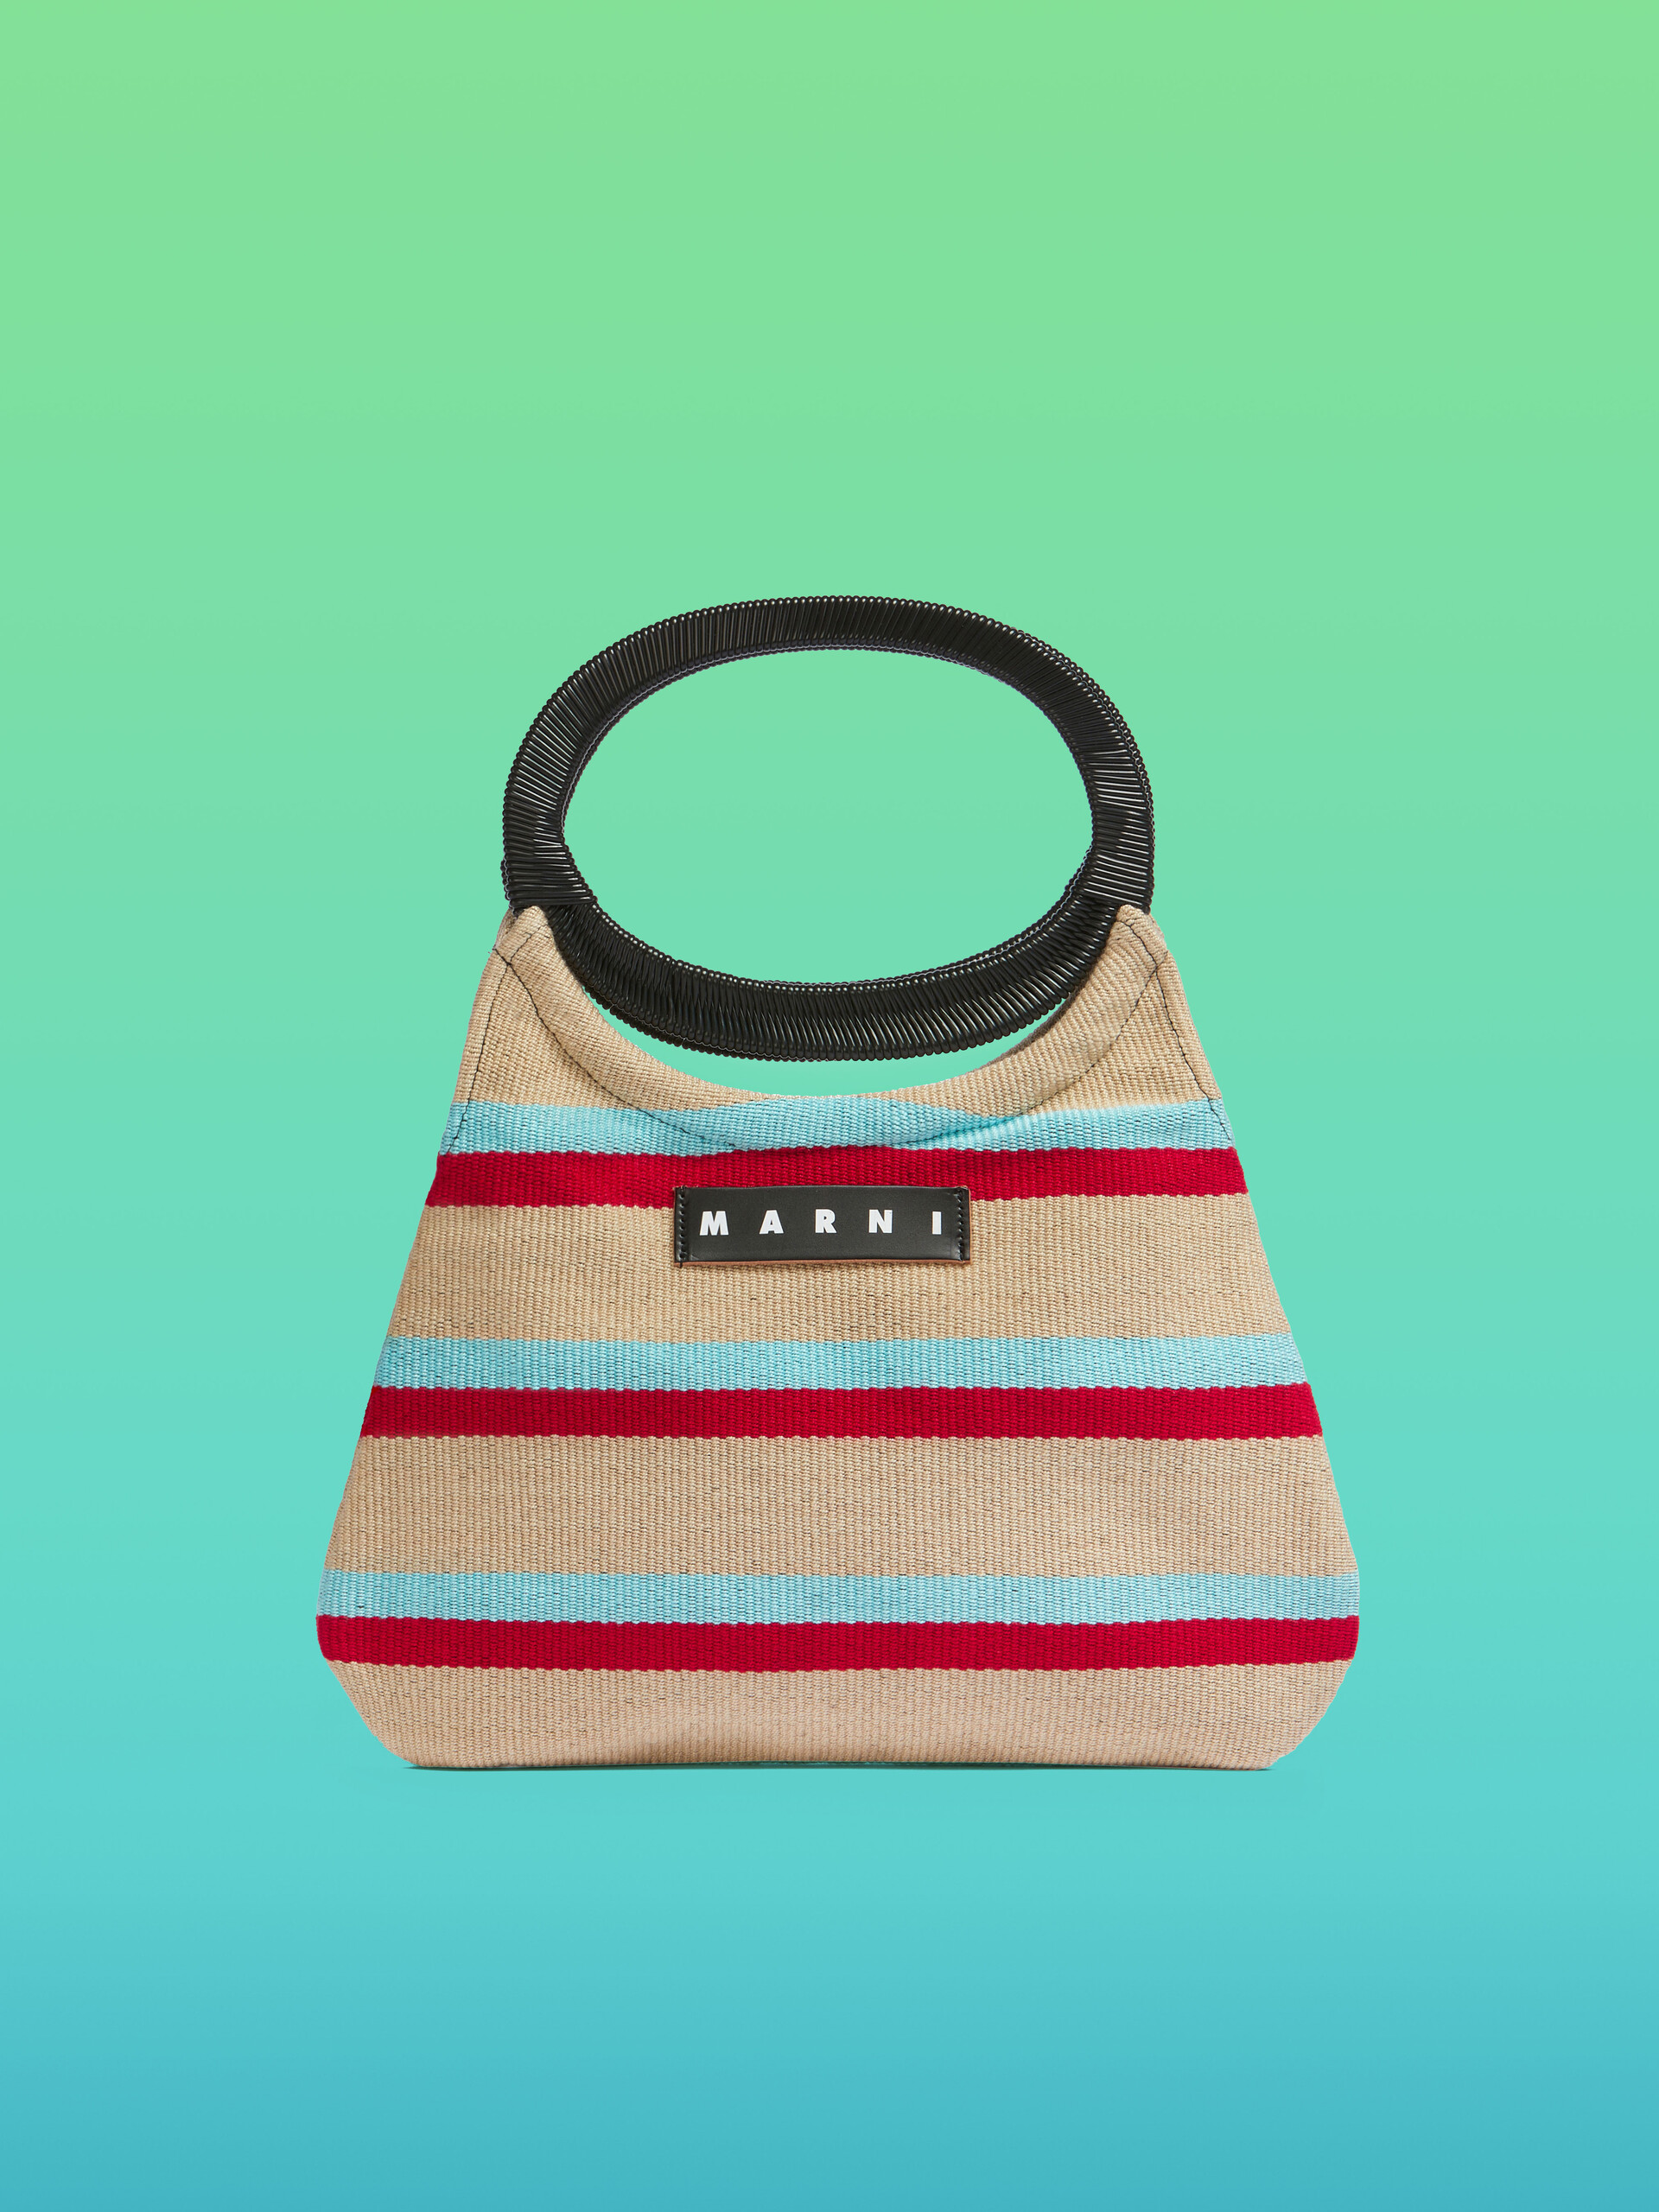 MARNI MARKET bag in multicolor striped cotton - Bags - Image 1